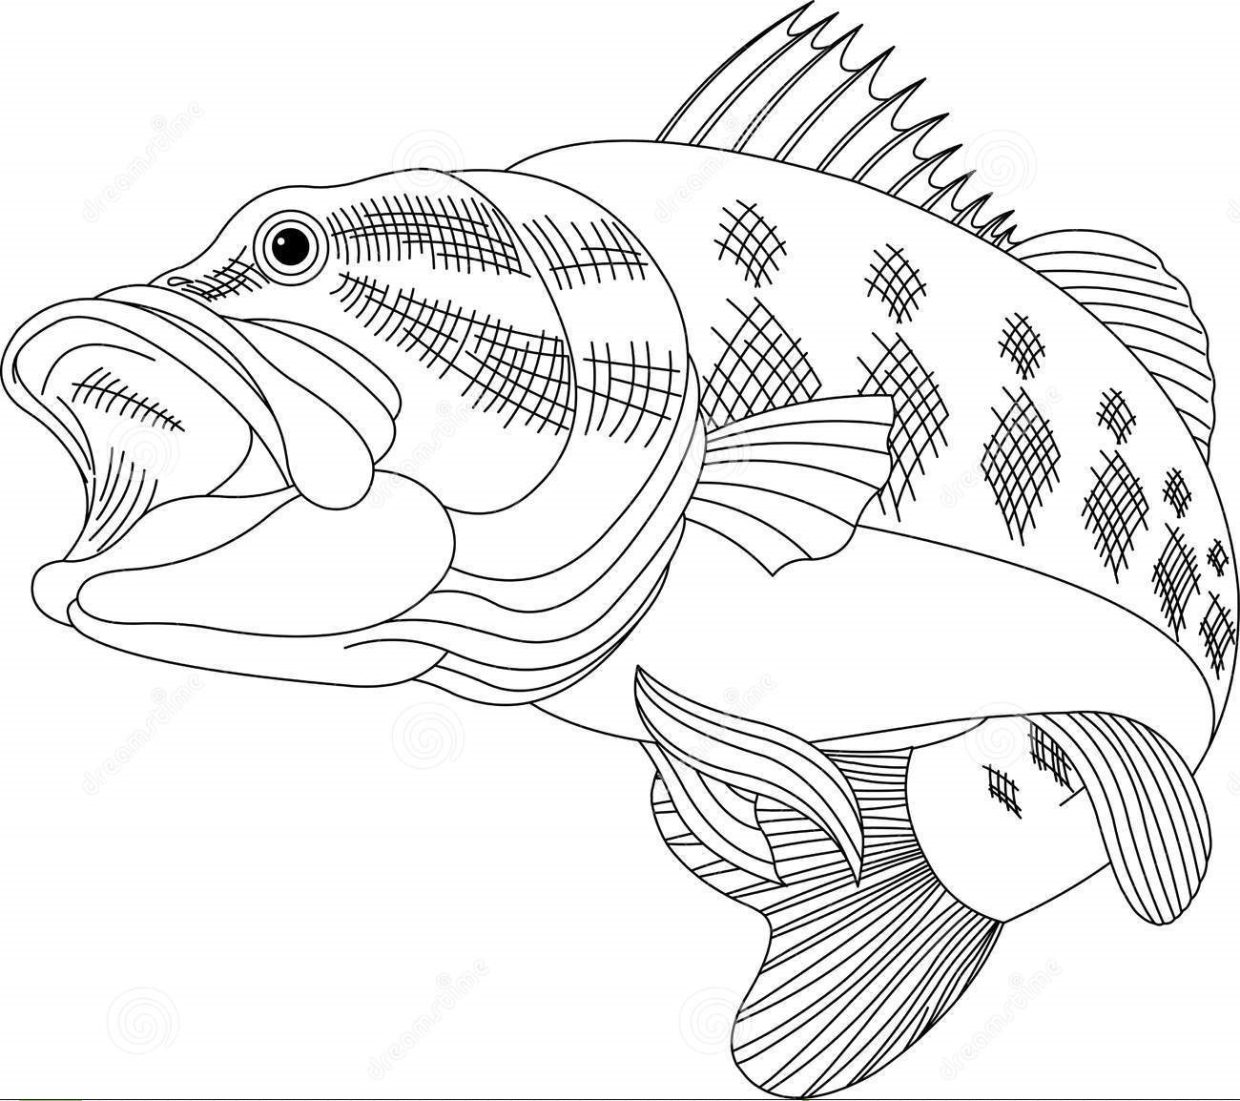 Desenho de Peixe para Imprimir e Colorir: Baixar Grátis Vários